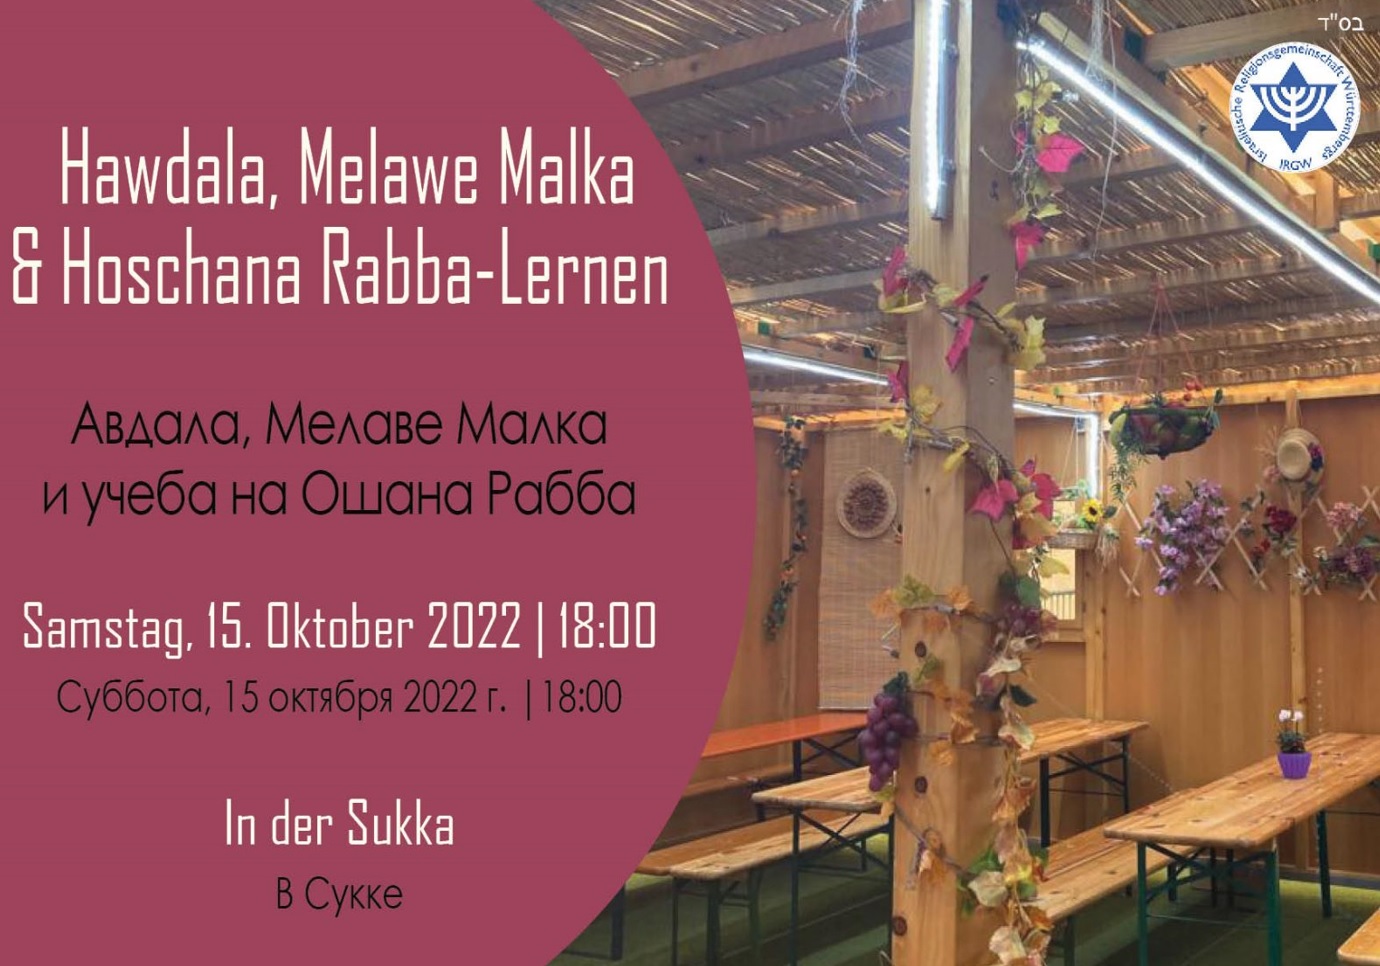 Hawdala, Melawe Malka & Hoschana Rabba-Lernen am Samstag, 15.10.2022, 18.00 Uhr in der Laubhütte der IRGW